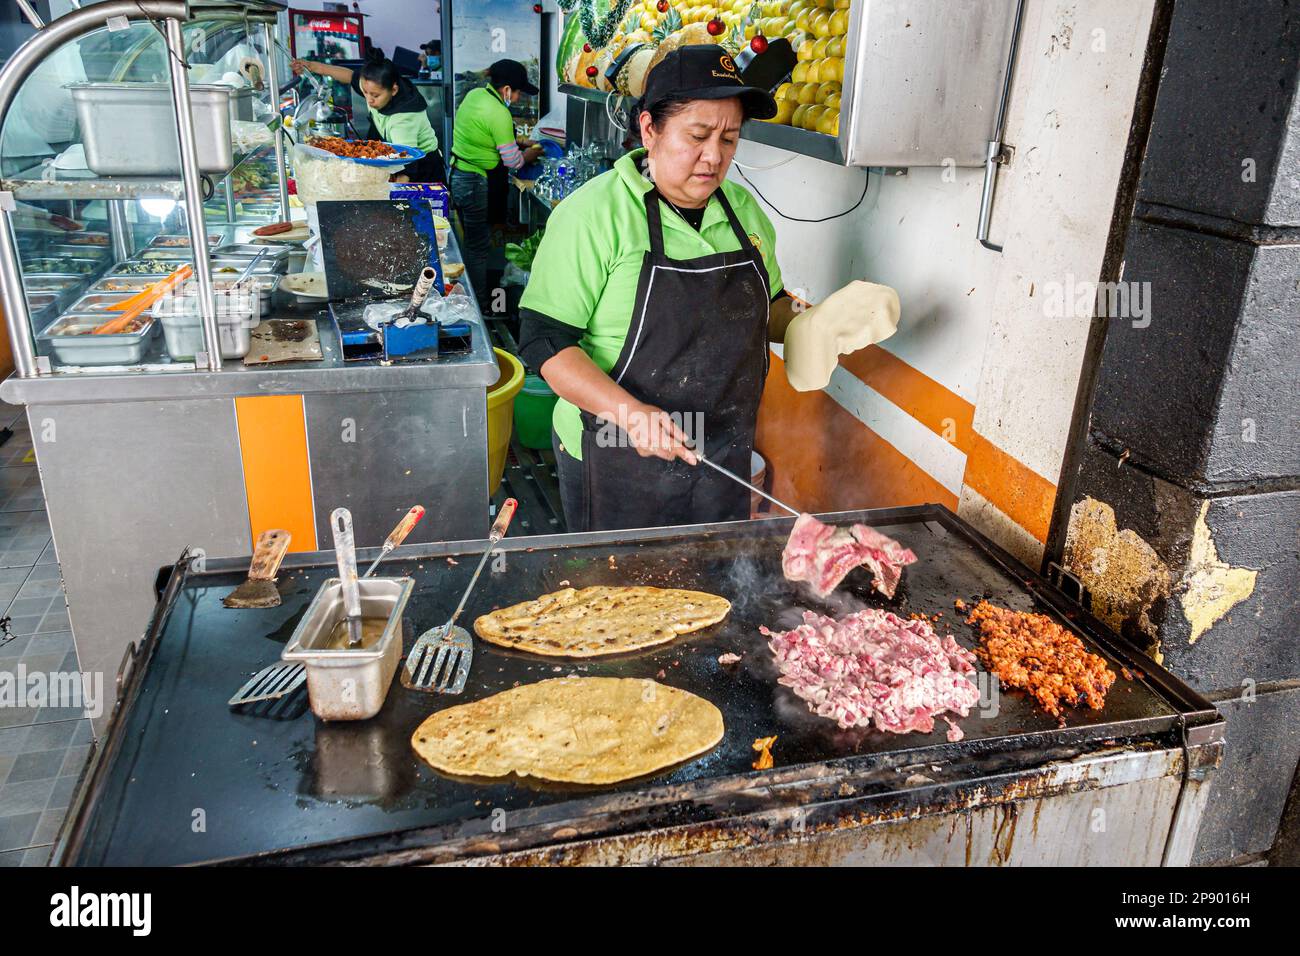 Ciudad de México, cocinar a la parrilla, carnitas, El Rincon Tapatio, mujer mujer mujer mujer mujer, adultos adultos, residentes residentes, restaurantes, cena Foto de stock